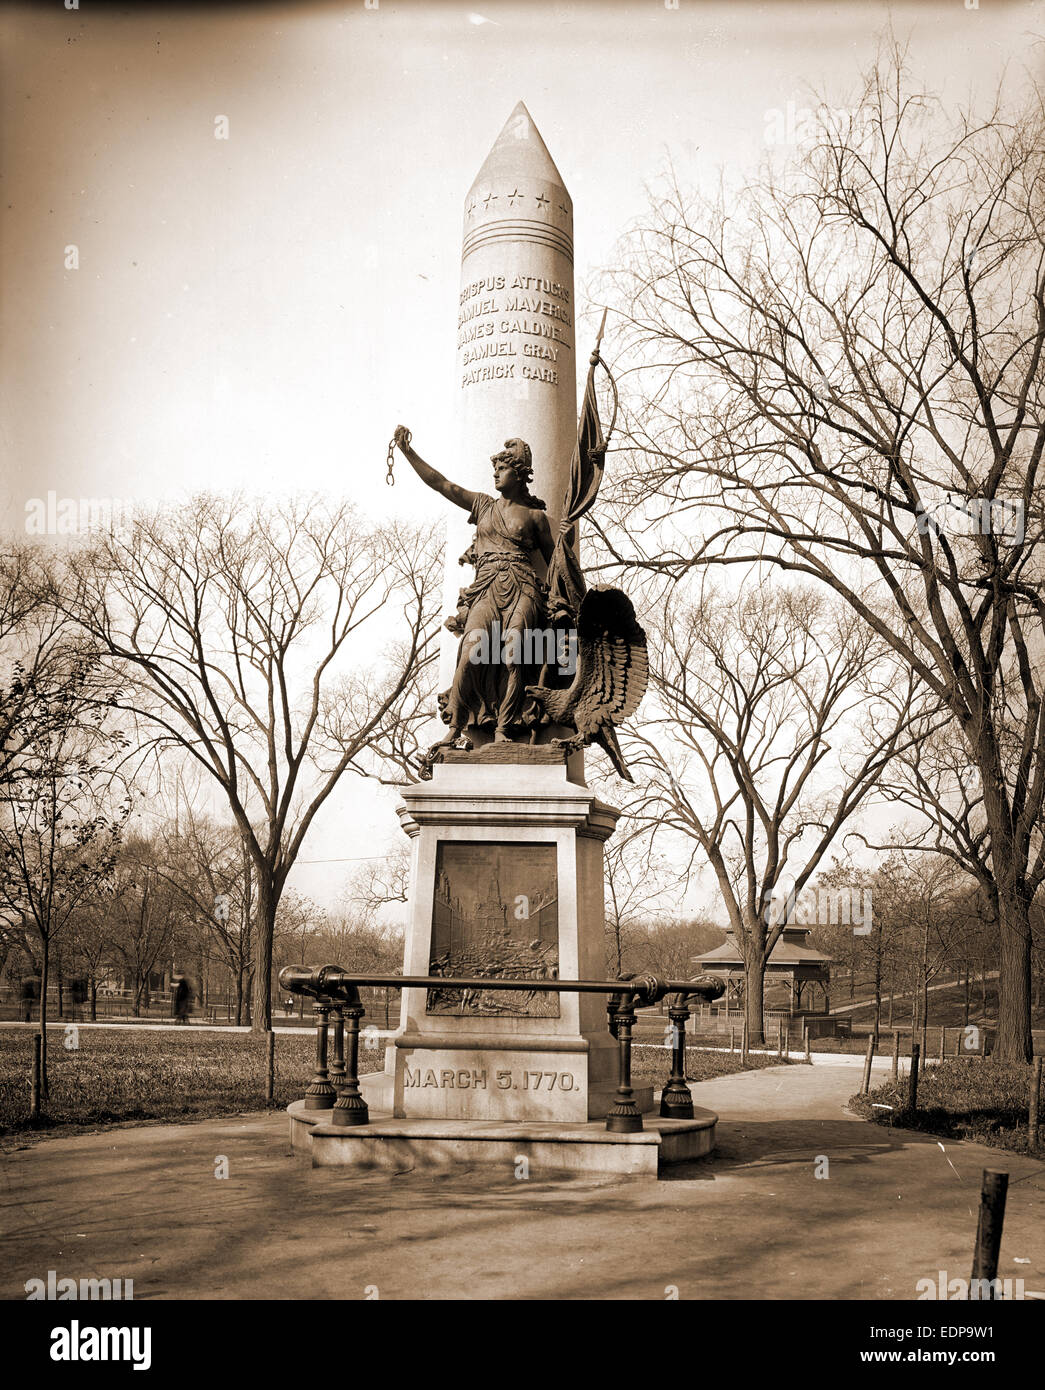 Boston, Mass, Massacre de Boston Monument, monuments et mémoriaux, sculpture, des parcs, des États-Unis, de l'histoire, la Révolution, 1775-1783 Banque D'Images